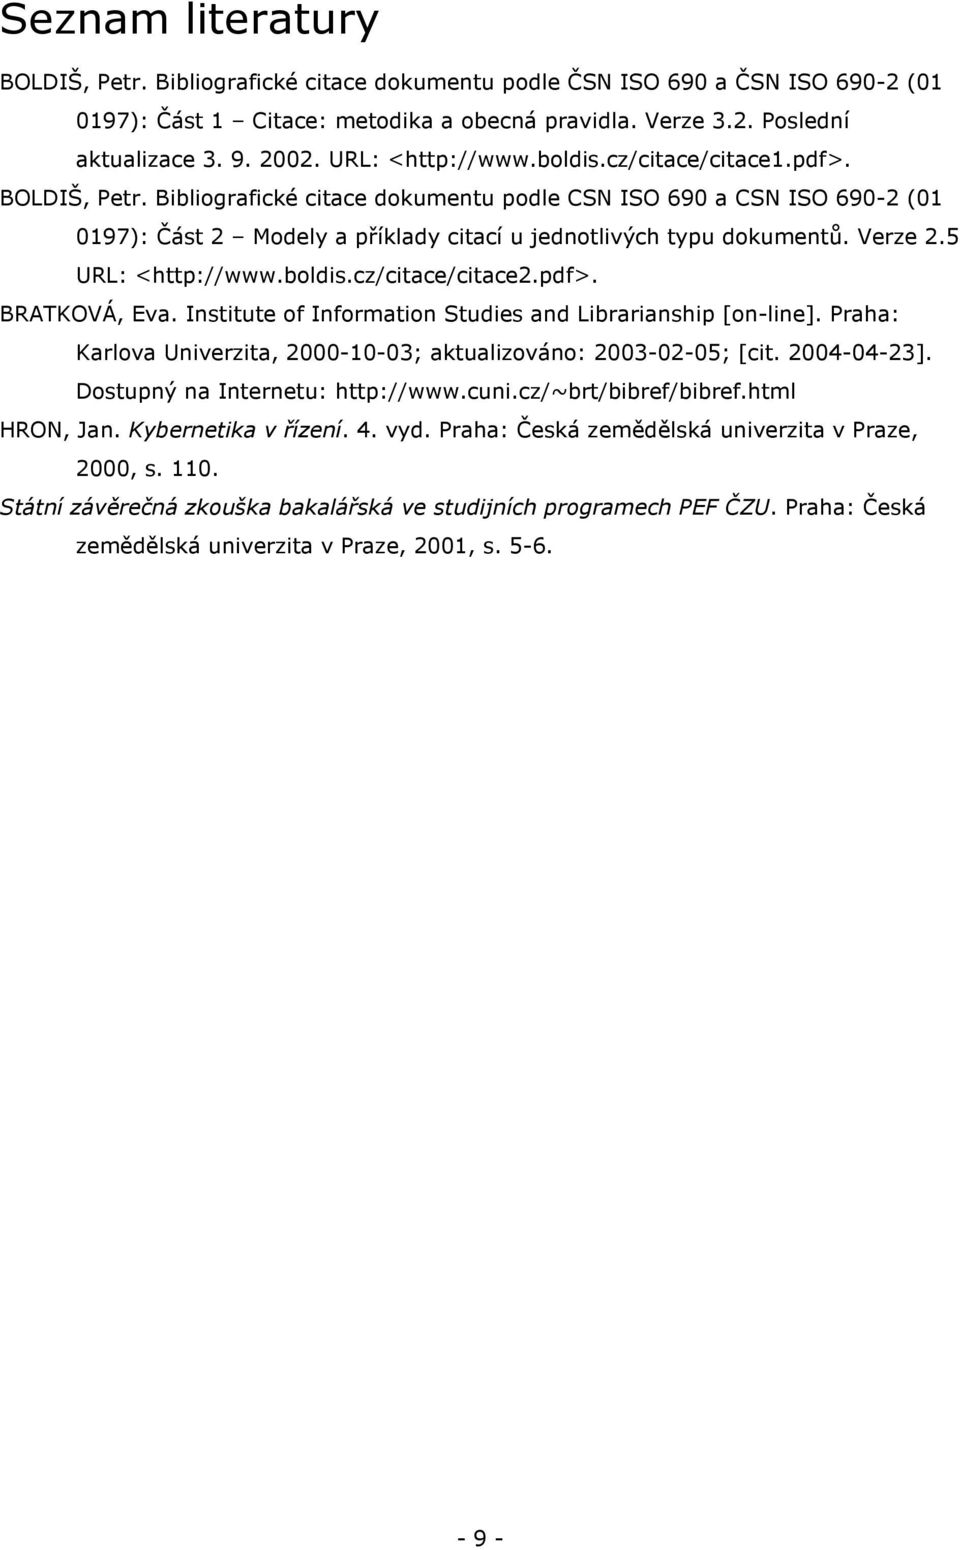 Bibliografické citace dokumentu podle CSN ISO 690 a CSN ISO 690-2 (01 0197): Část 2 Modely a příklady citací u jednotlivých typu dokumentů. Verze 2.5 URL: <http://www.boldis.cz/citace/citace2.pdf>.